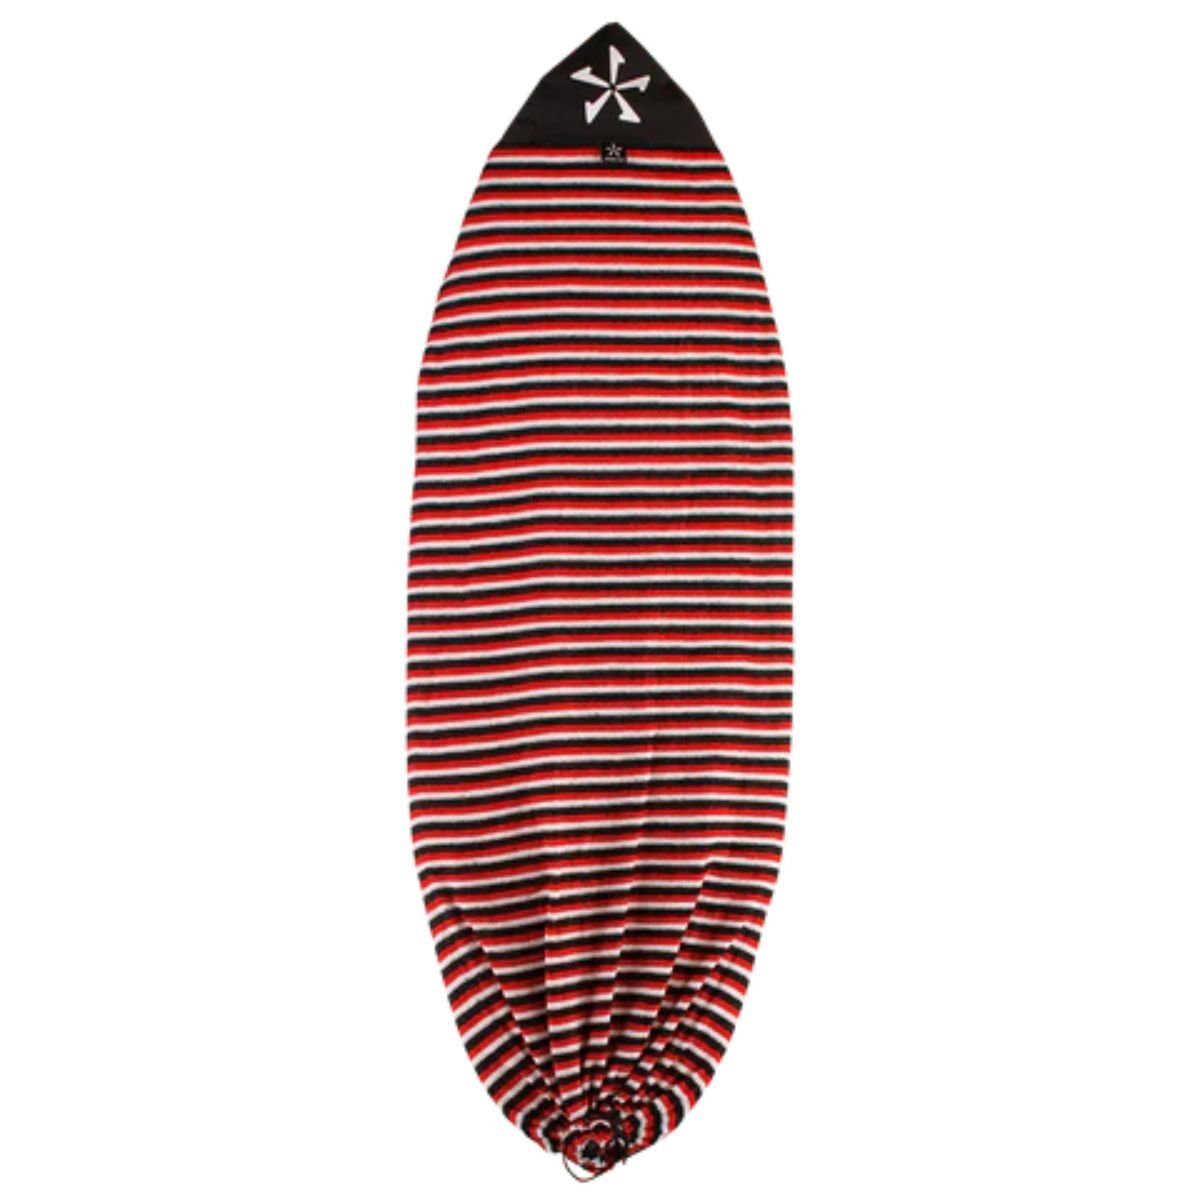 Phase 5 Wakesurf Board Sock in Stripe - BoardCo